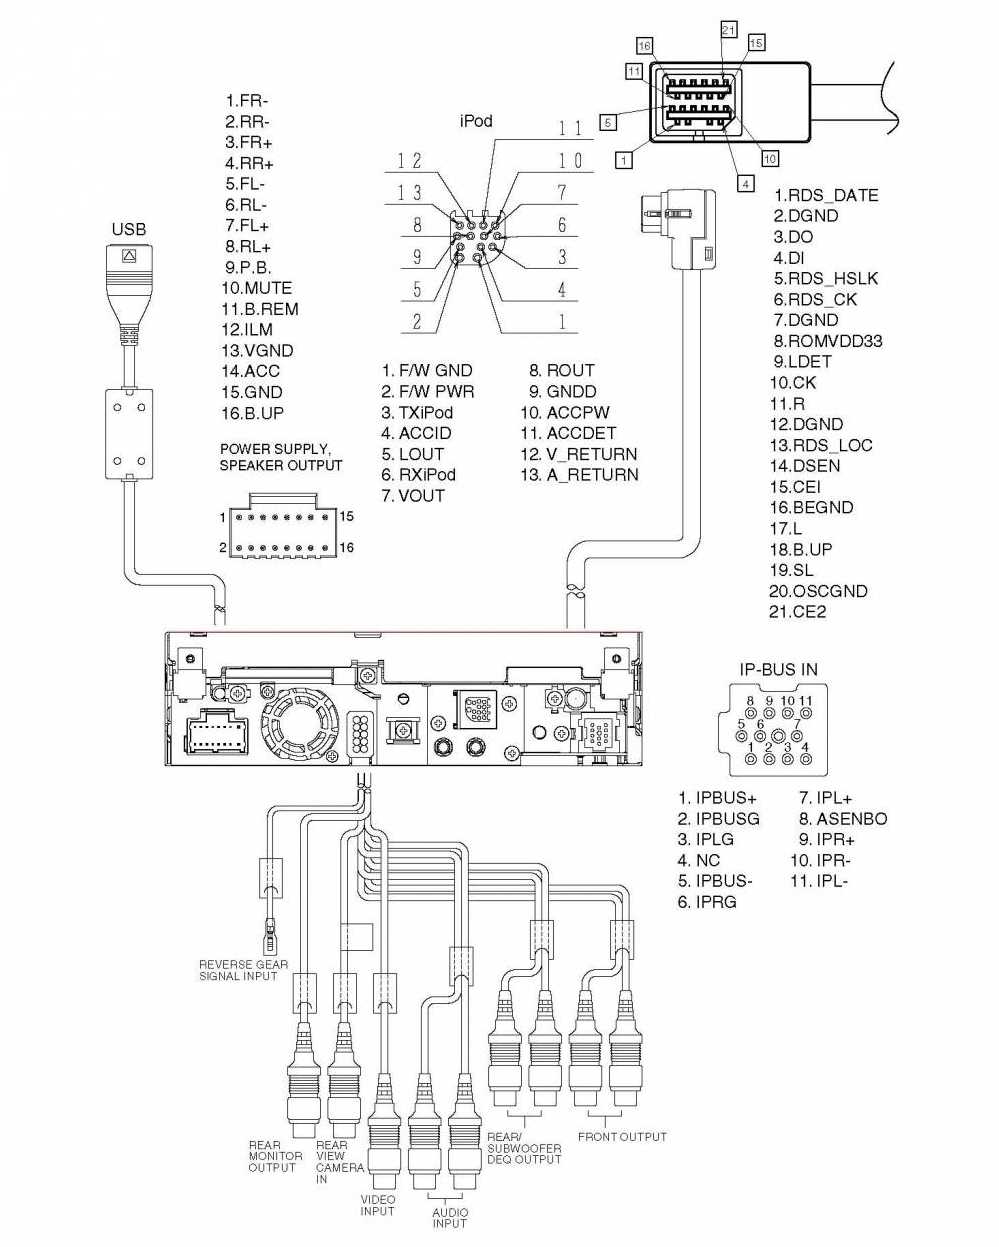 Схема подключения и настройка магнитолы pioneer mvh-150ub